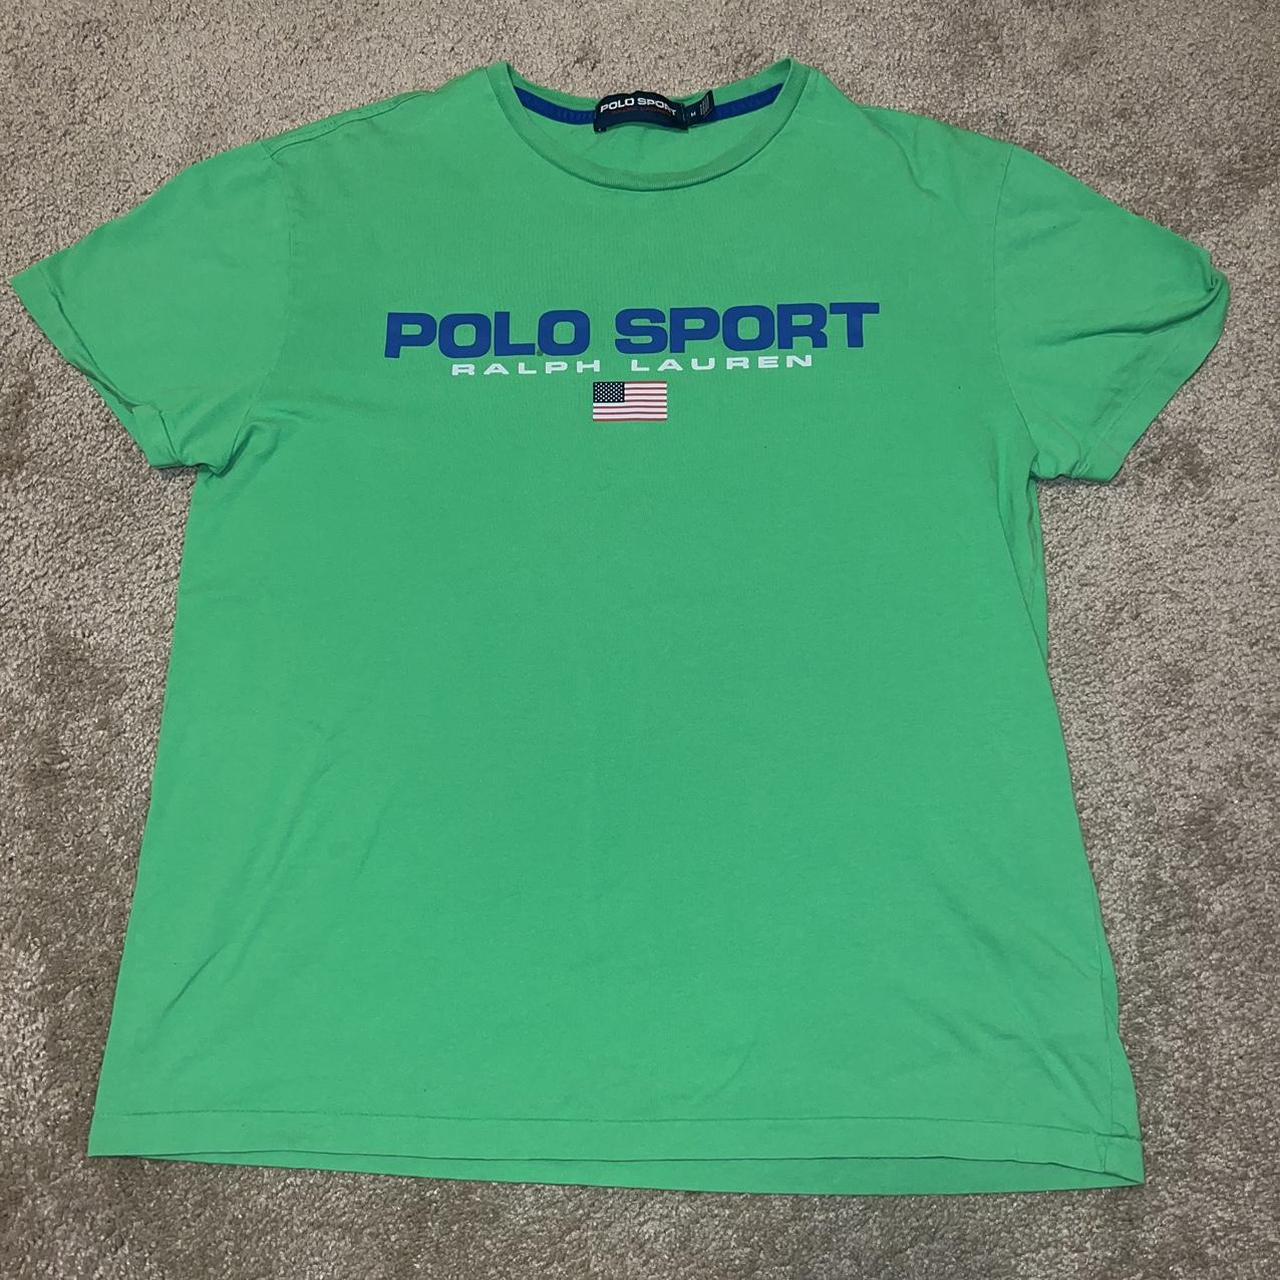 Polo Sport Men's Green T-shirt | Depop